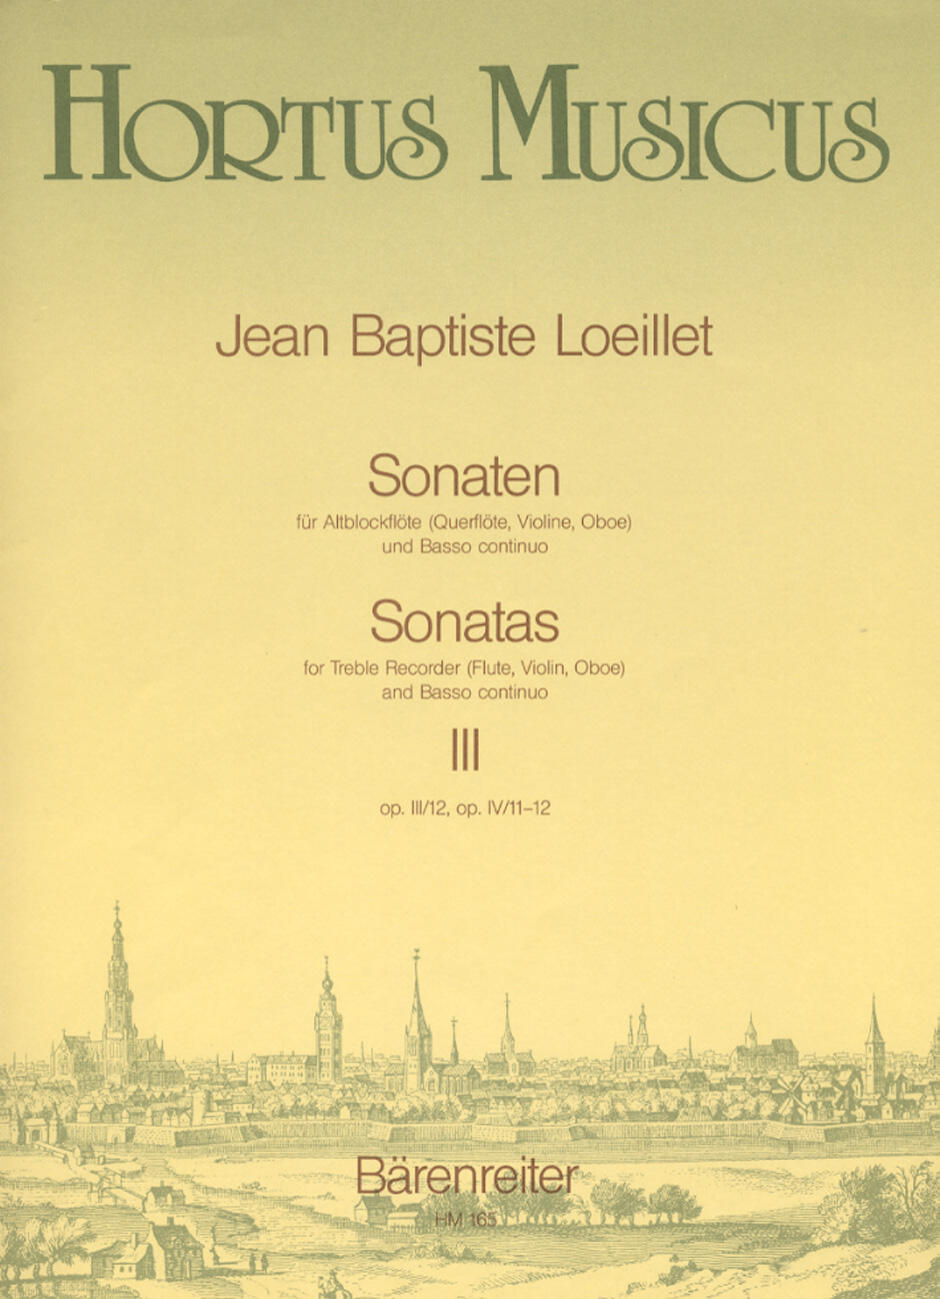 Sonatas Opus 3/12 Opus 4/11-12 Recorder and Piano Hortus Musicus (Bärenreiter) : photo 1